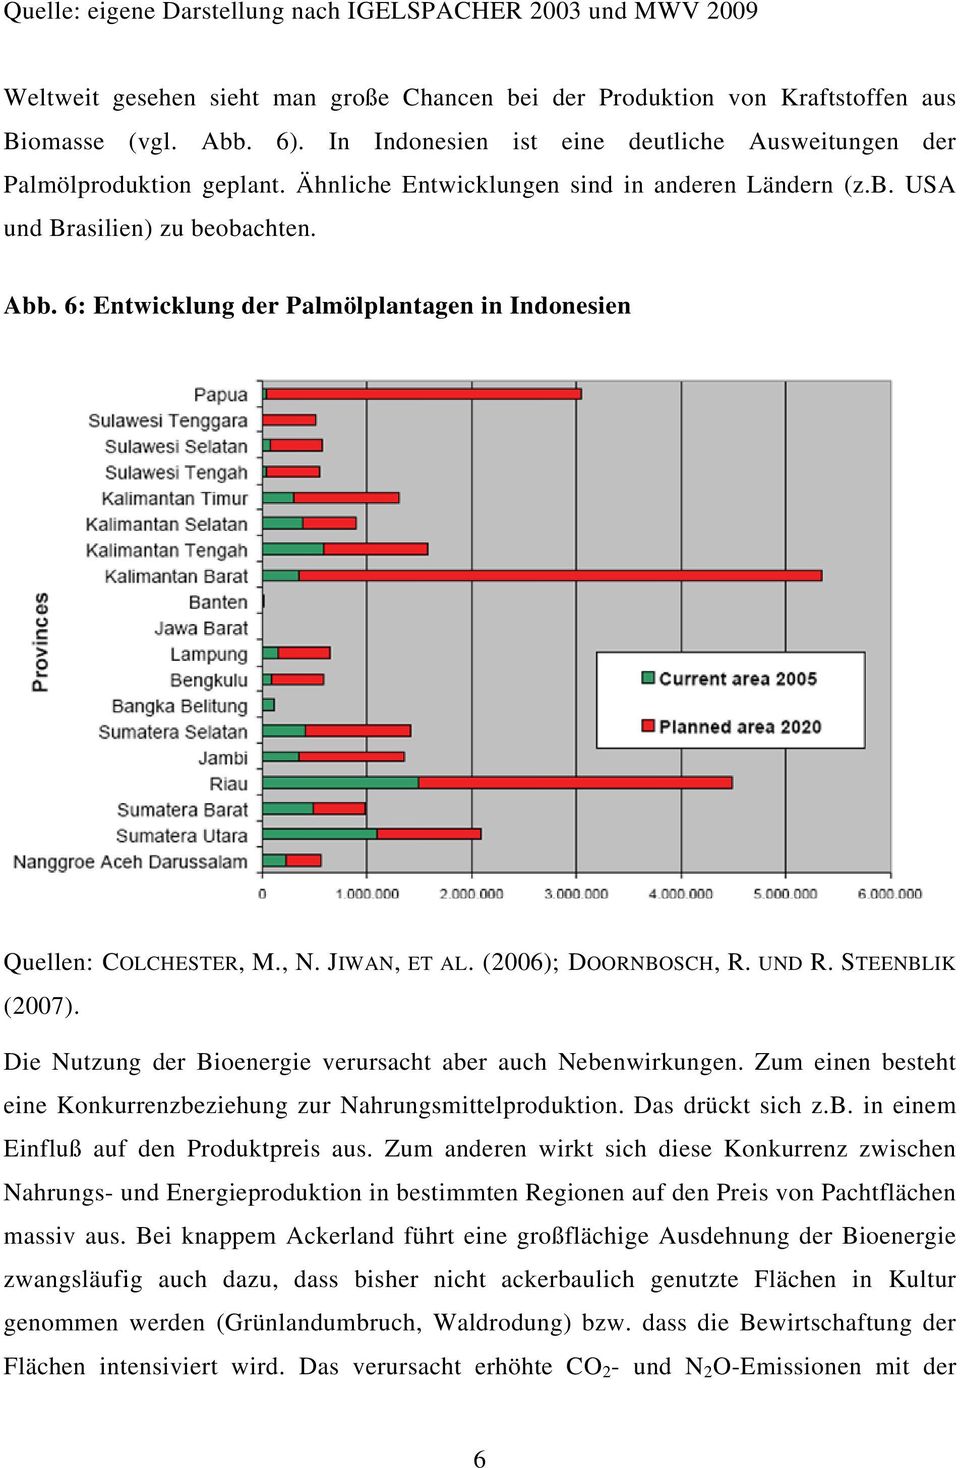 6: Entwicklung der Palmölplantagen in Indonesien Quellen: COLCHESTER, M., N. JIWAN, ET AL. (2006); DOORNBOSCH, R. UND R. STEENBLIK (2007).